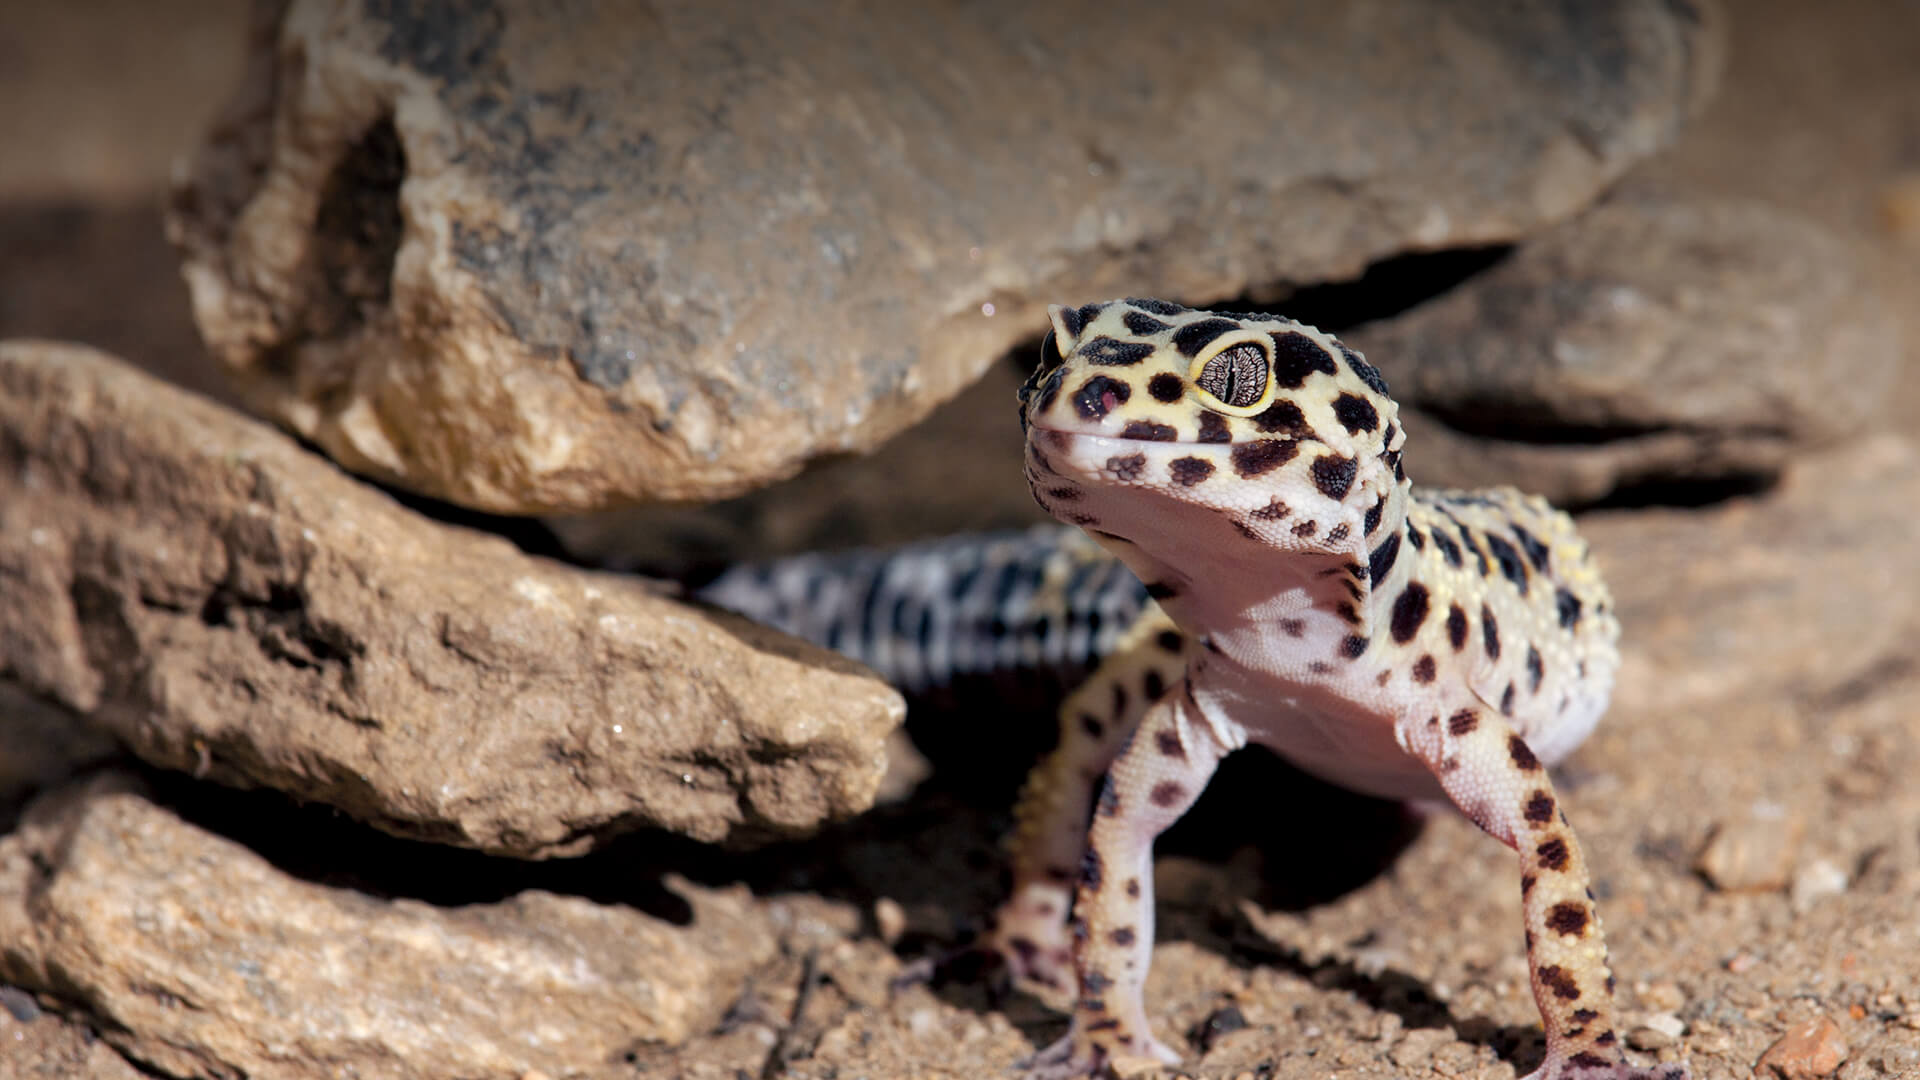 Leopard gecko emerging from rocks.